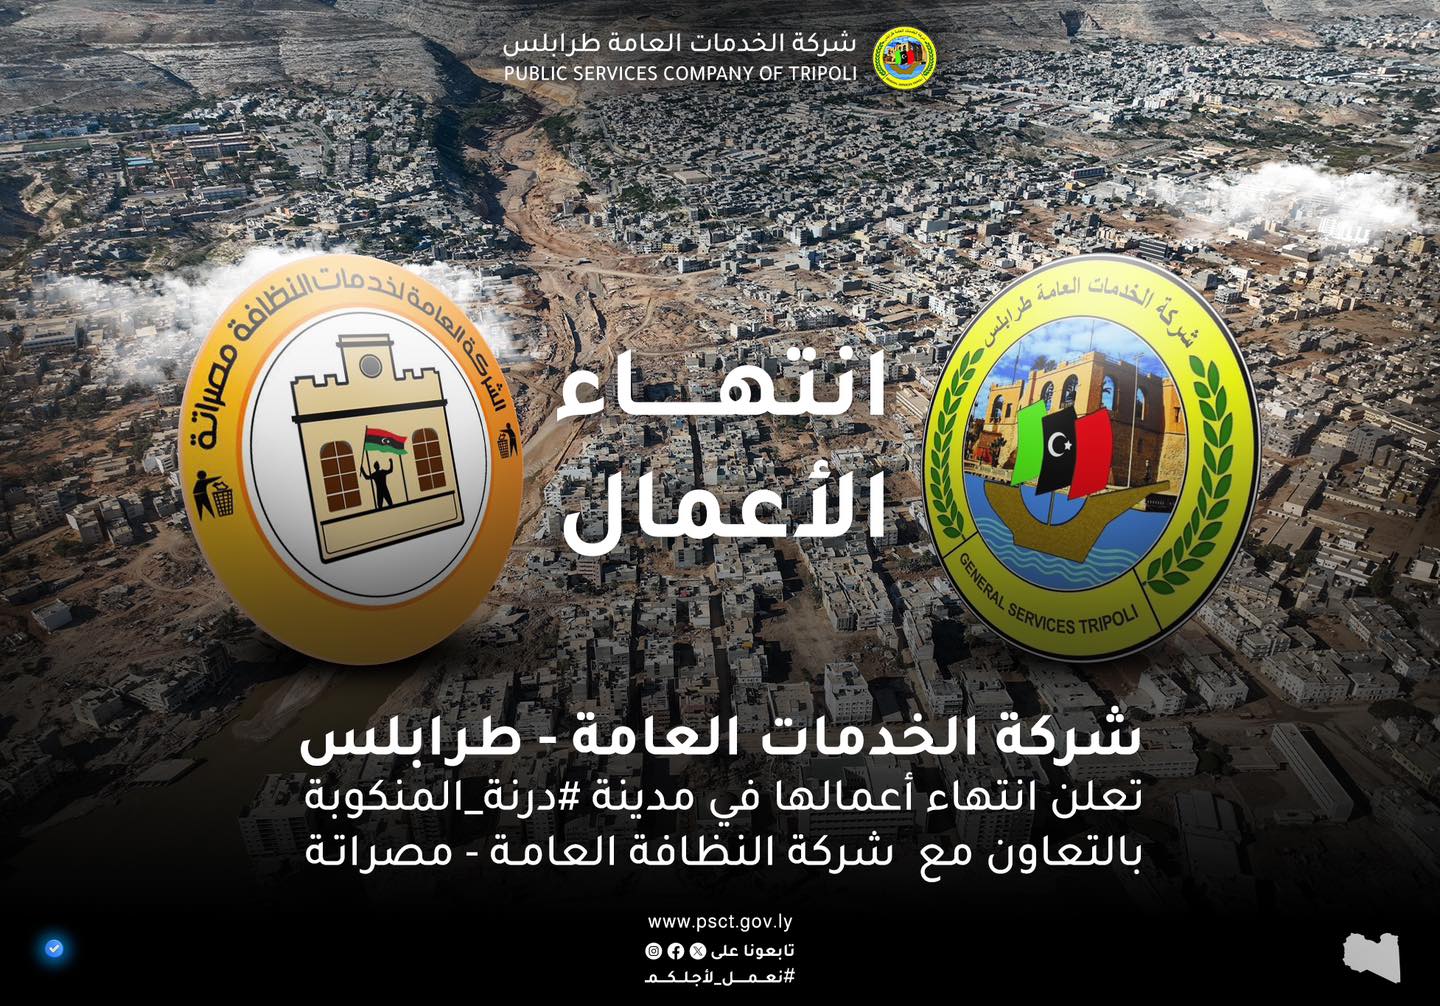 شركتا الخدمات العامة – طرابلس ومصراته يعلنان انتهاء أعمالهما في مدينة درنة.